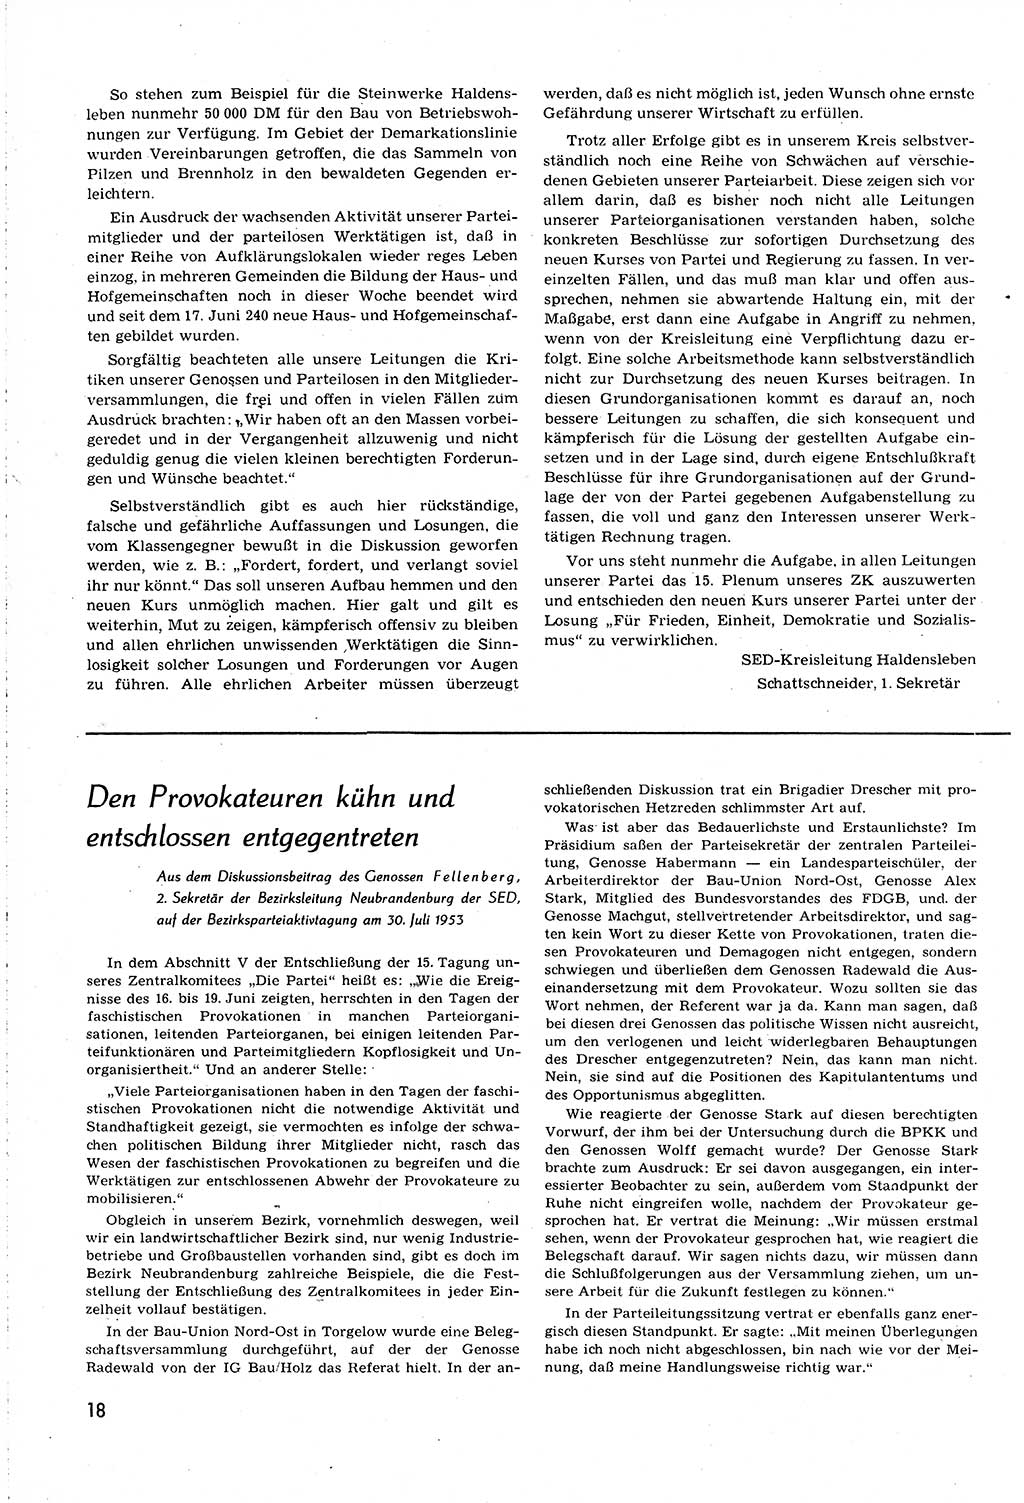 Neuer Weg (NW), Organ des Zentralkomitees (ZK) [Sozialistische Einheitspartei Deutschlands (SED)] für alle Parteiarbeiter, 8. Jahrgang [Deutsche Demokratische Republik (DDR)] 1953, Heft 14/18 (NW ZK SED DDR 1953, H. 14/18)